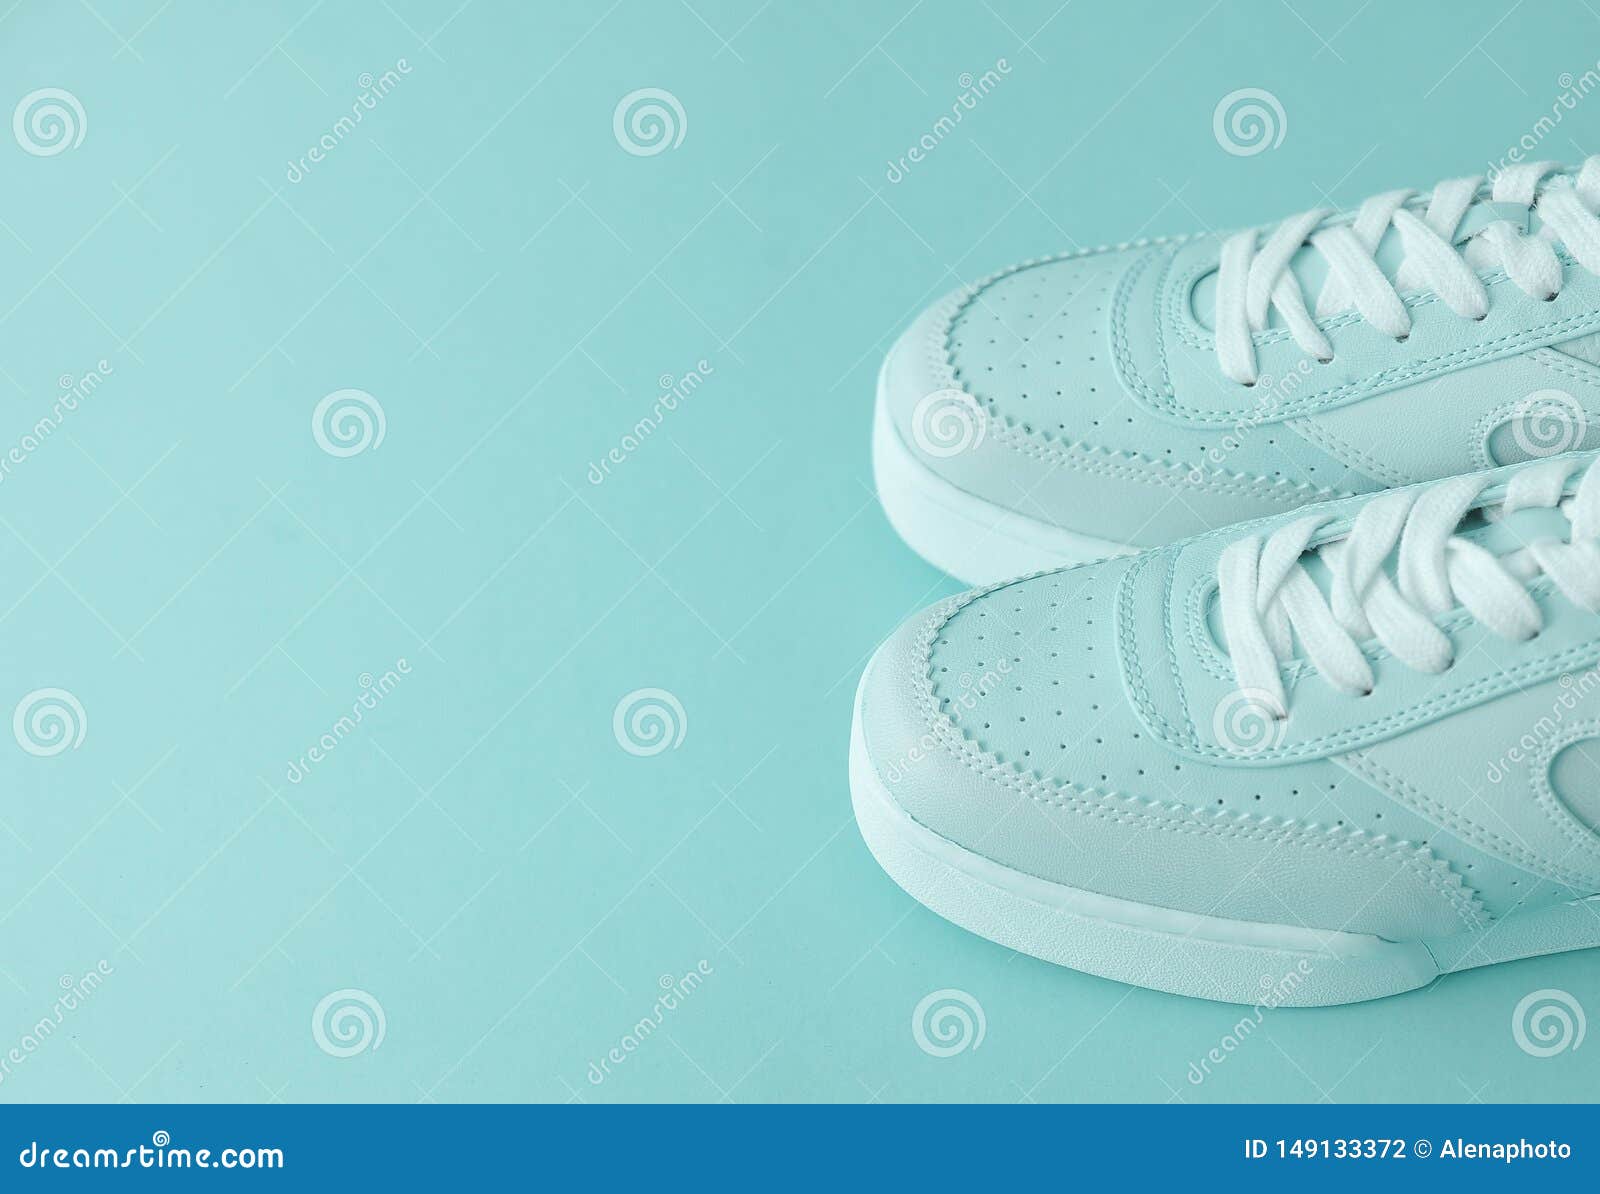 Stylish Blue Shoes on Colorful Background. Stock Photo - Image of ...